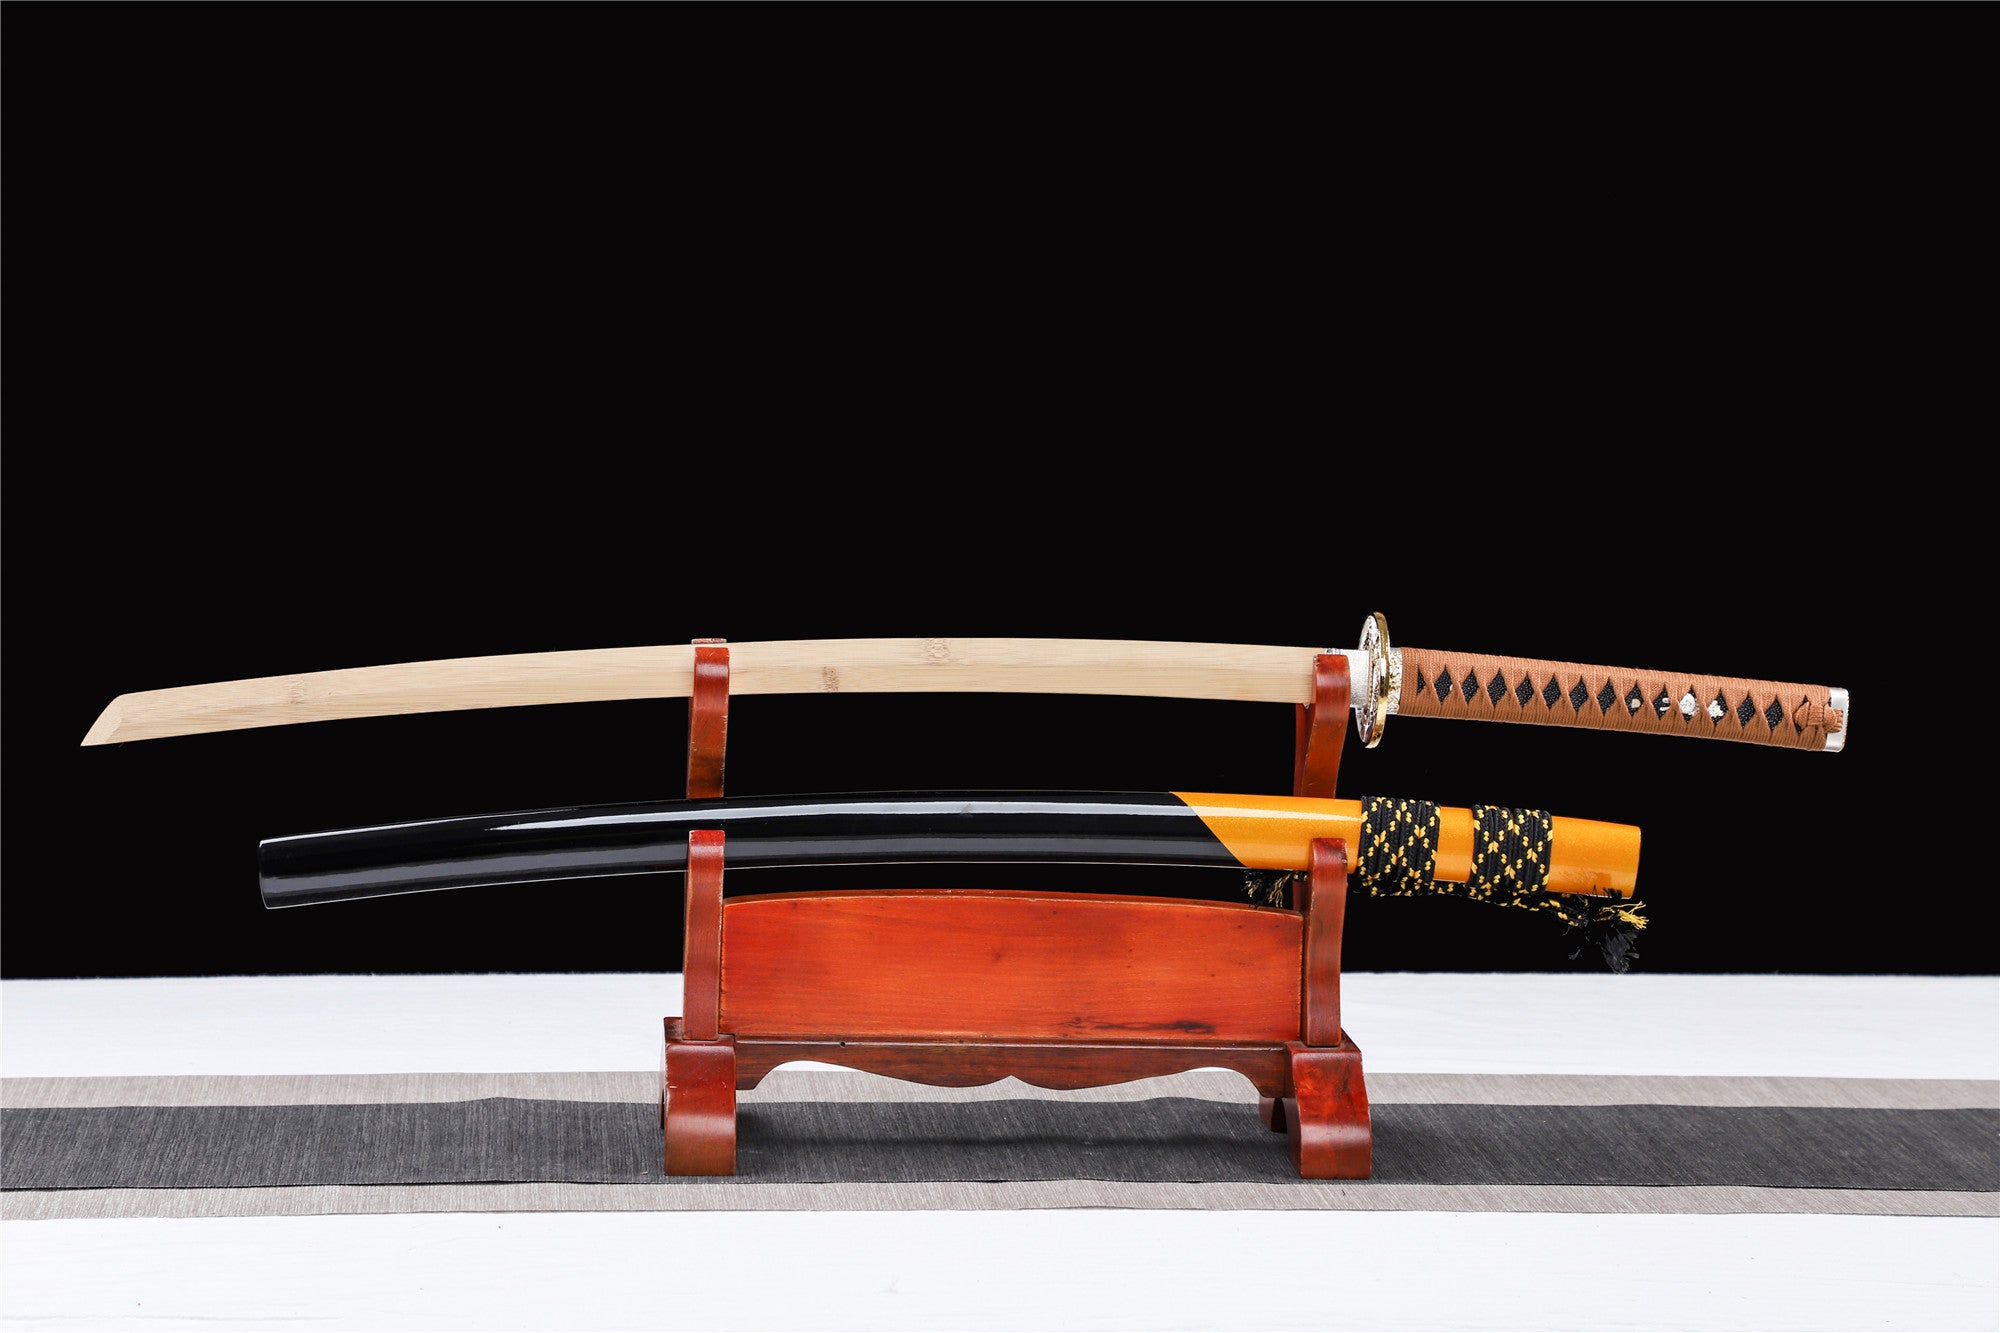 Zweifarbiges Katana, Schwarz und Gelb, Holz-Katana, japanisches Samurai-Schwert, handgefertigtes Holzschwert, Bambusklinge